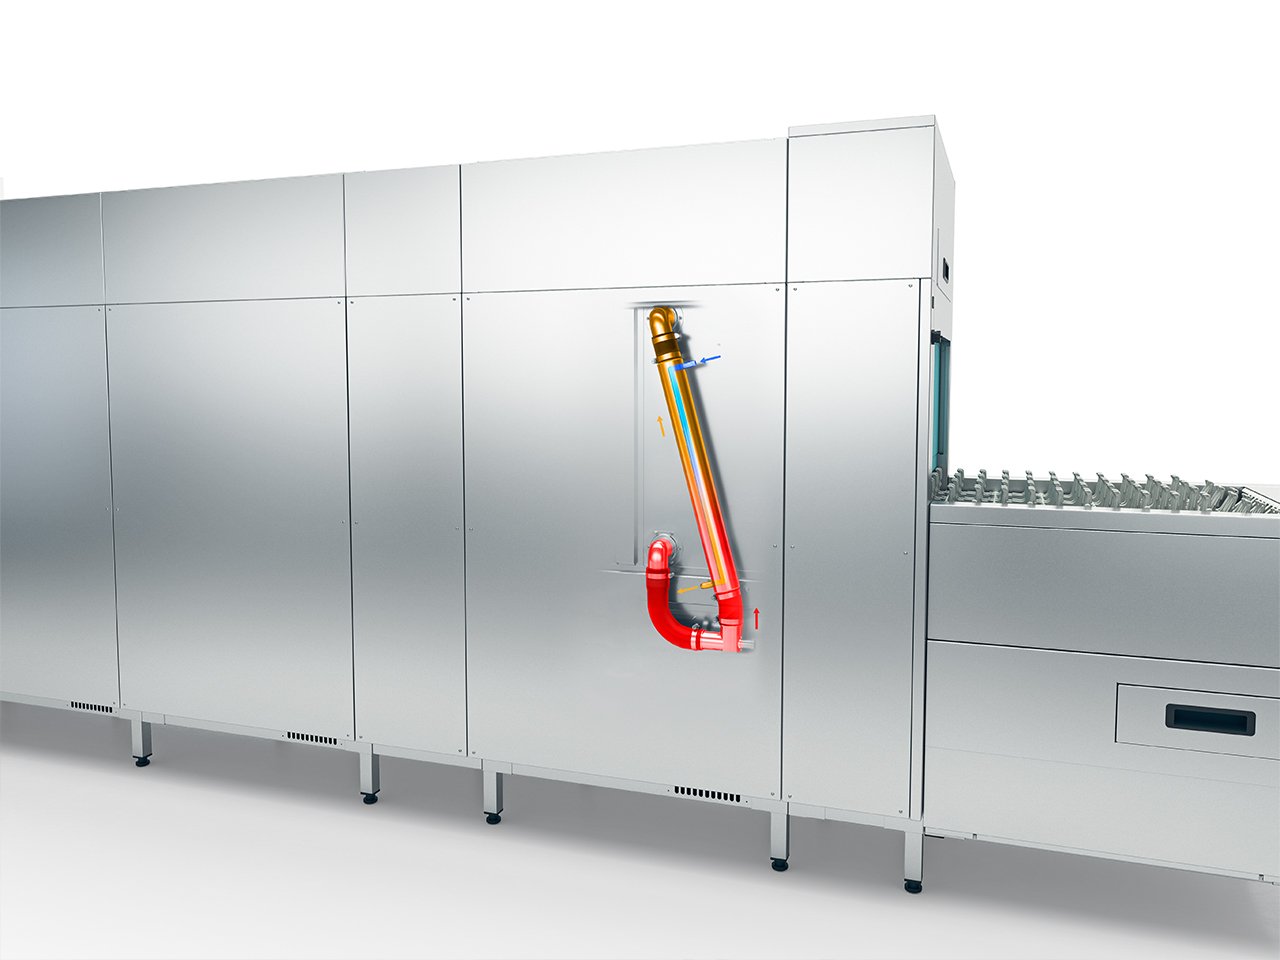 Winterhalter basket ve flight tipi bulaşık makineleri, MTF ön yıkama bölümü ısı eşanjörü